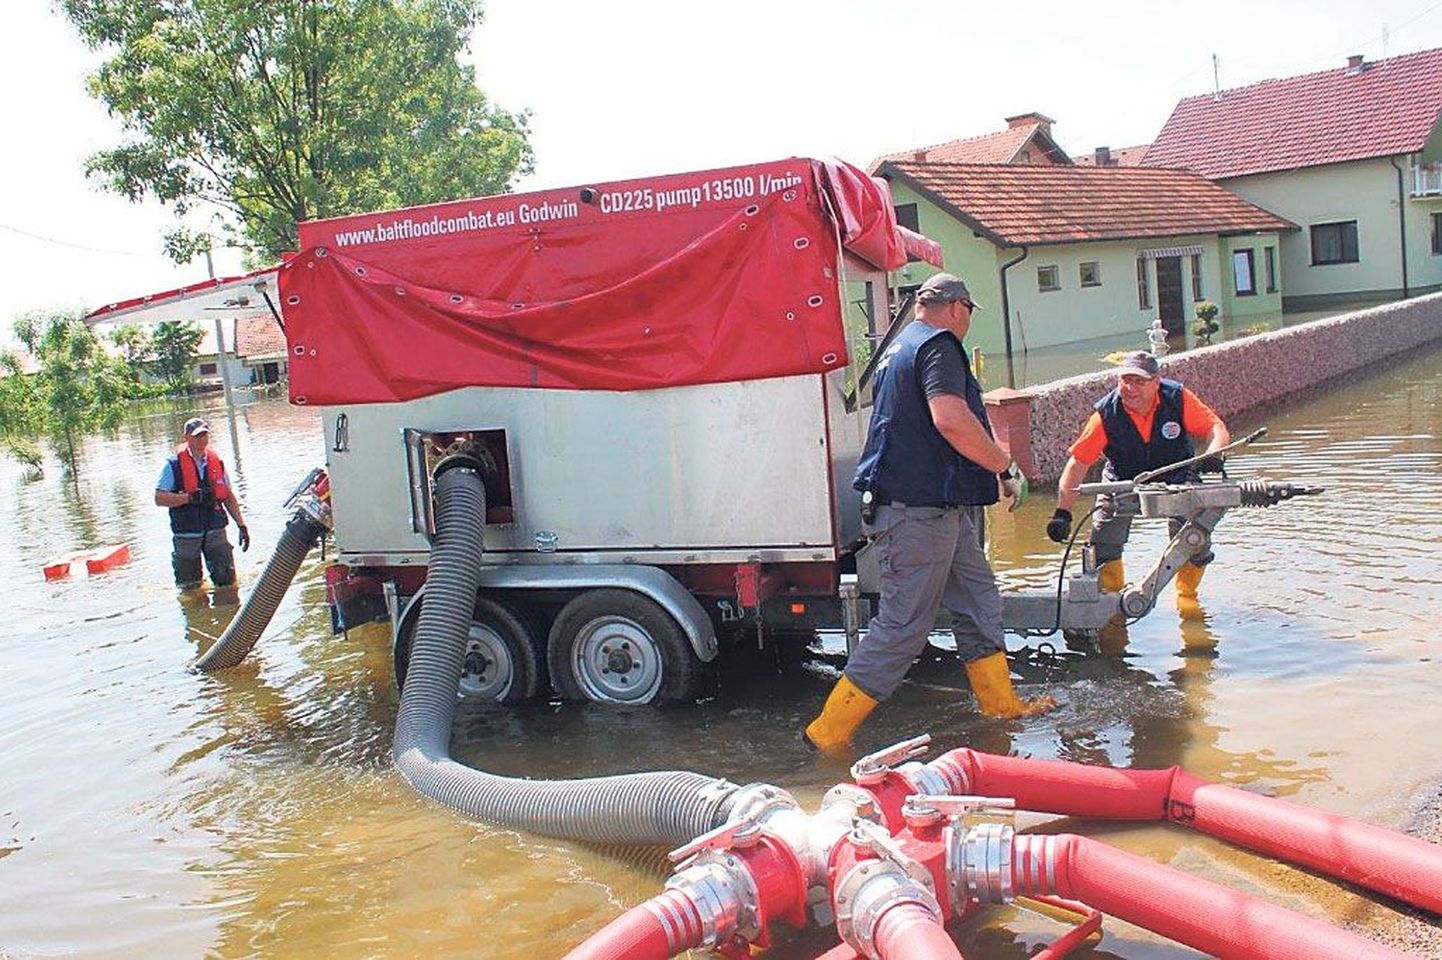 Eesti, Läti ja Leedu päästetöötajaid ühendava Balt-FloodCombati meeskond võitles Bosnias ja Hertsegoviinas paarkümmend päeva üle Sava jõe kallaste ajanud veega. Kokku pumbati jõesängi tagasi 500 000 tonni vett.